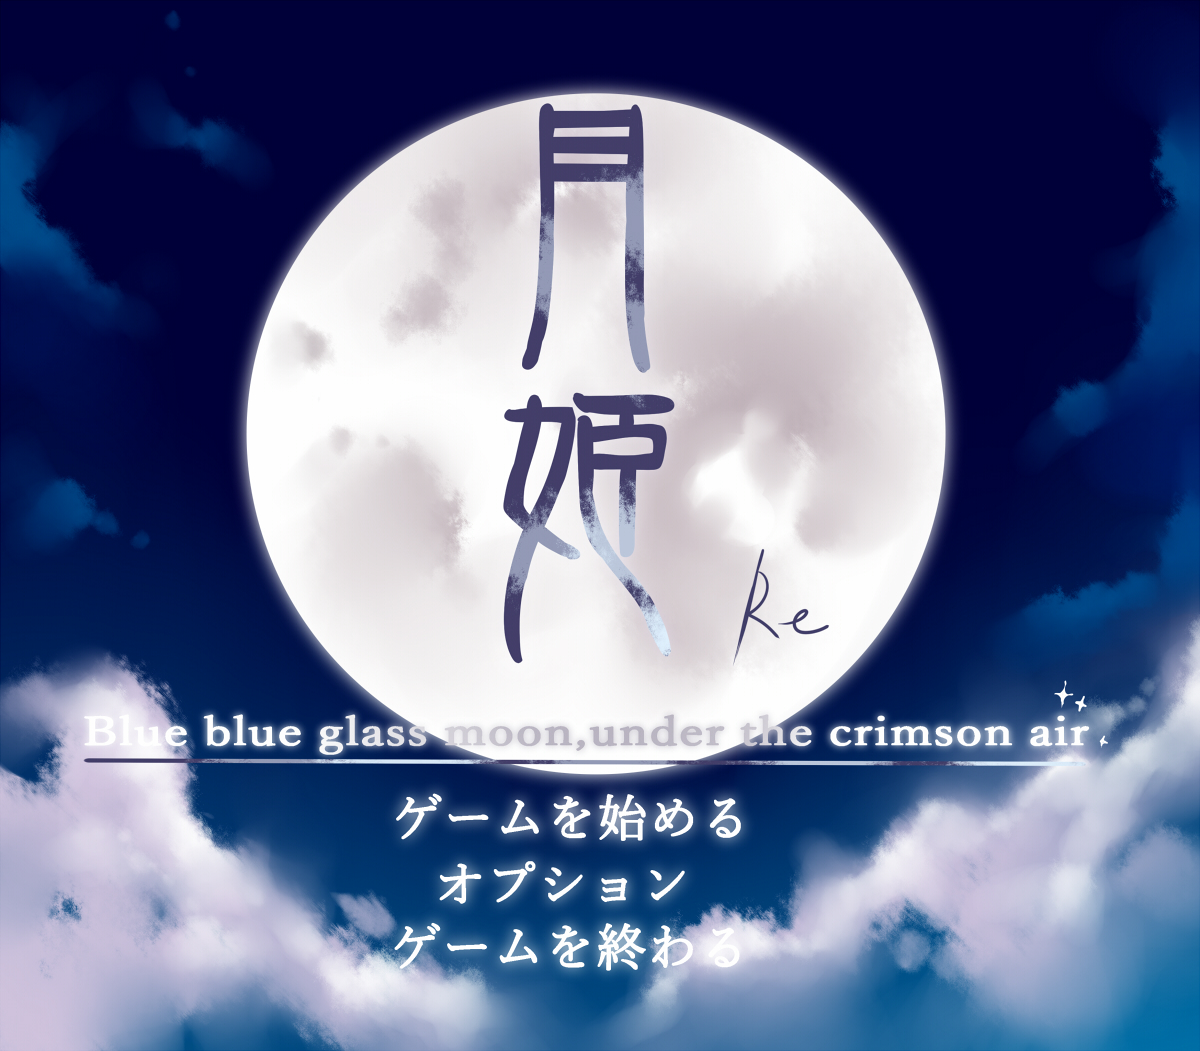 《月姬 -A piece of blue glass moon-》銷量破30萬